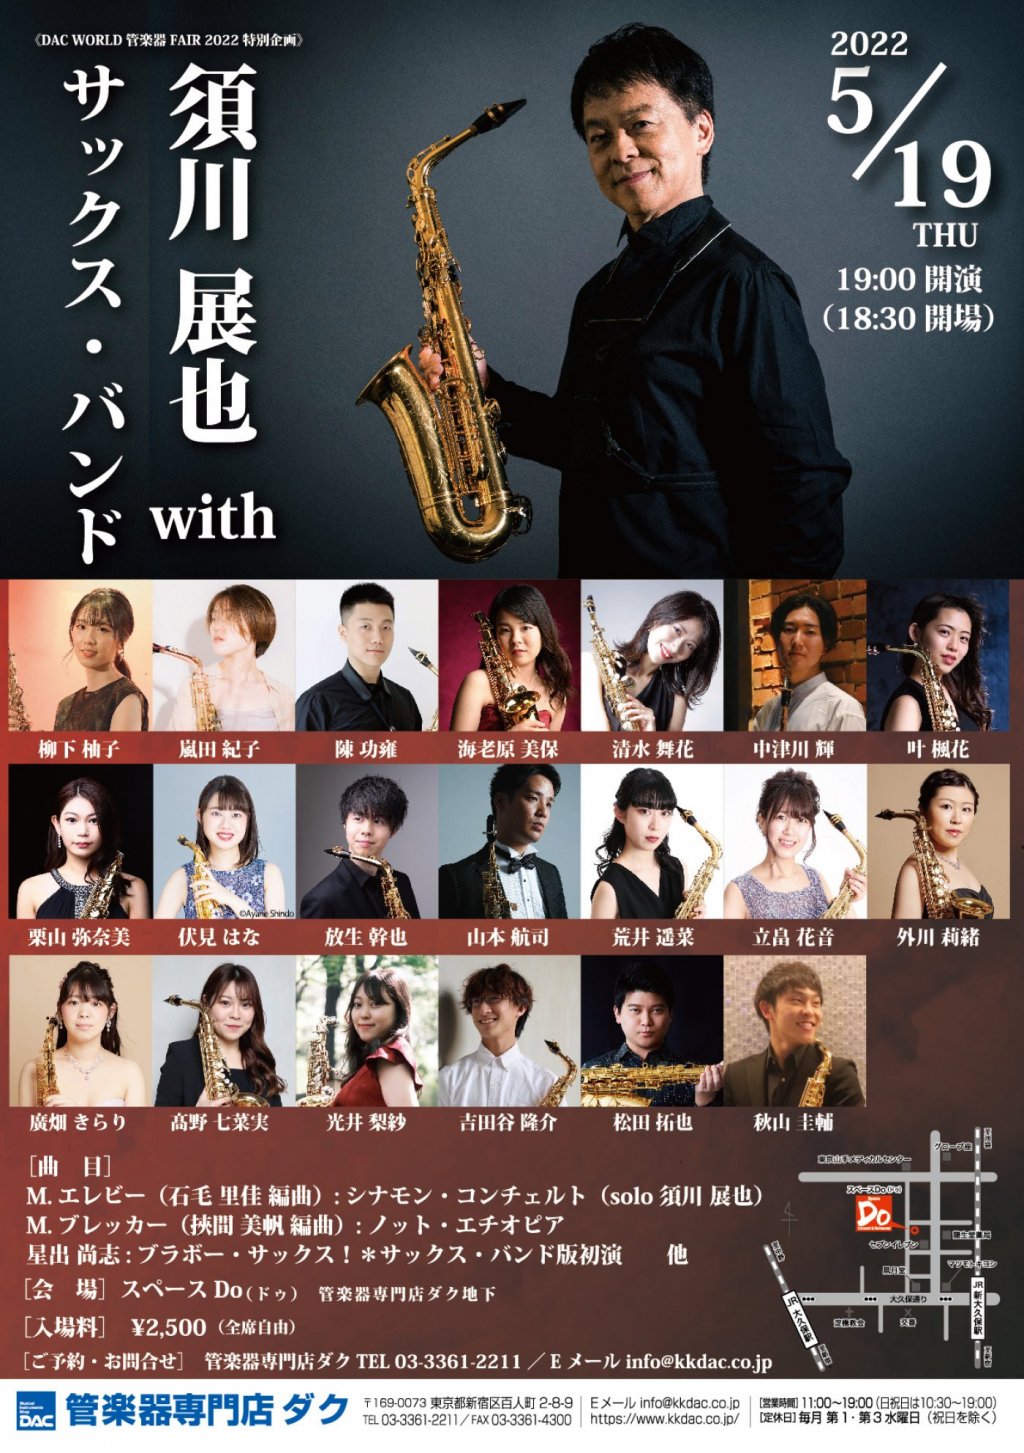 《DAC WORLD 管楽器 FAIR 2022 特別企画》須川 展也 with サックス・バンド ※チケット完売いたしました。